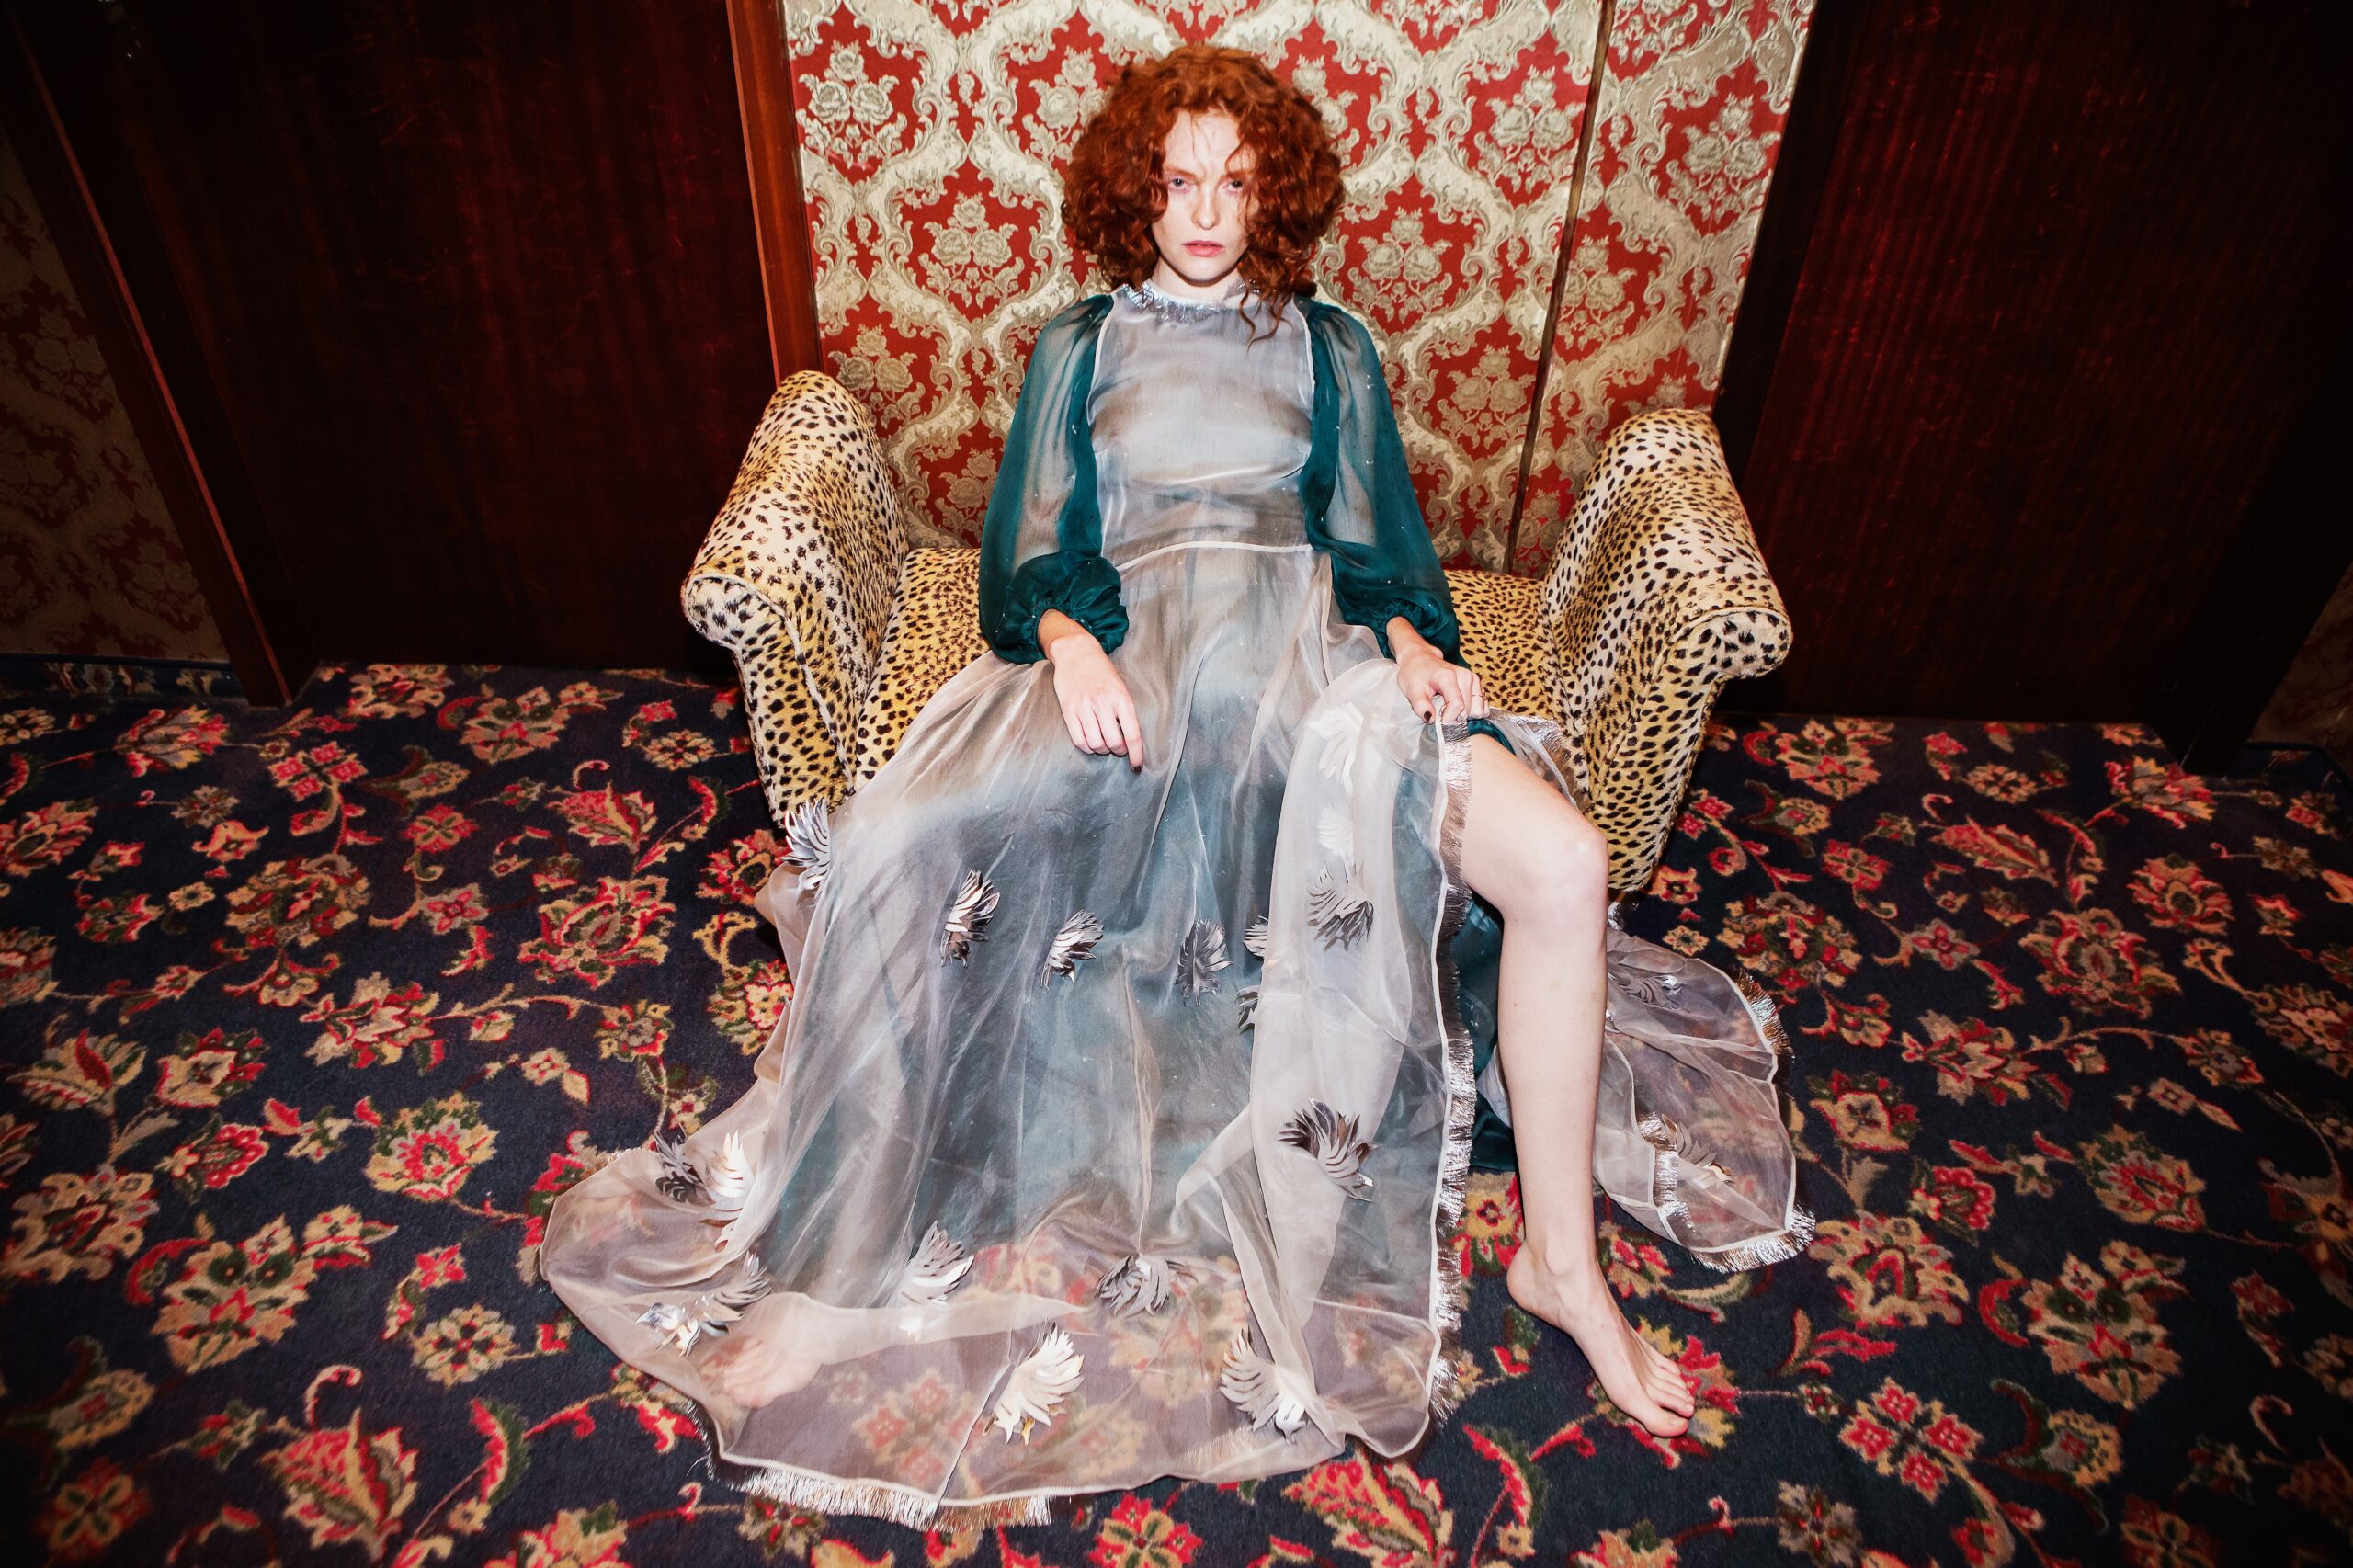 Frau mit Kleid auf einem Sessel mit vielen Mustern